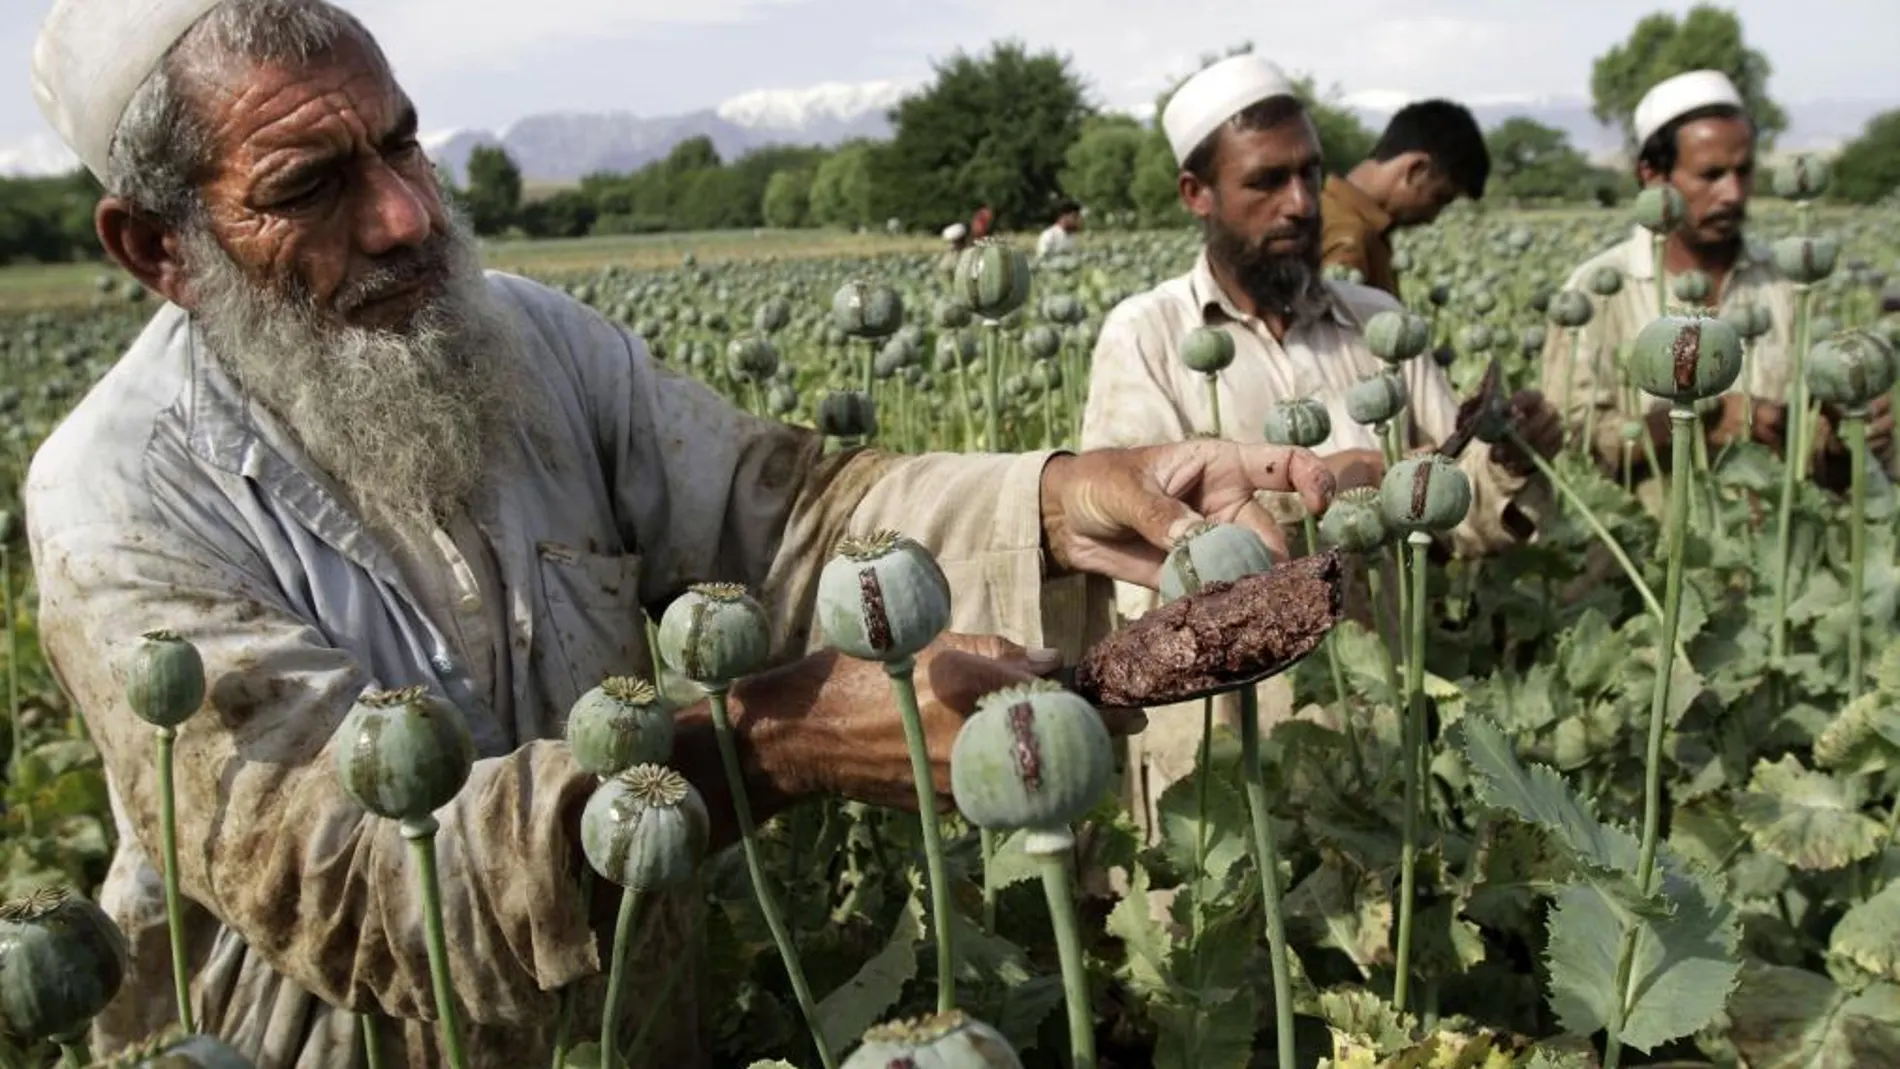 Agricultores afganos recogen opio en bruto en los campos de amapolas de Jalalabad.